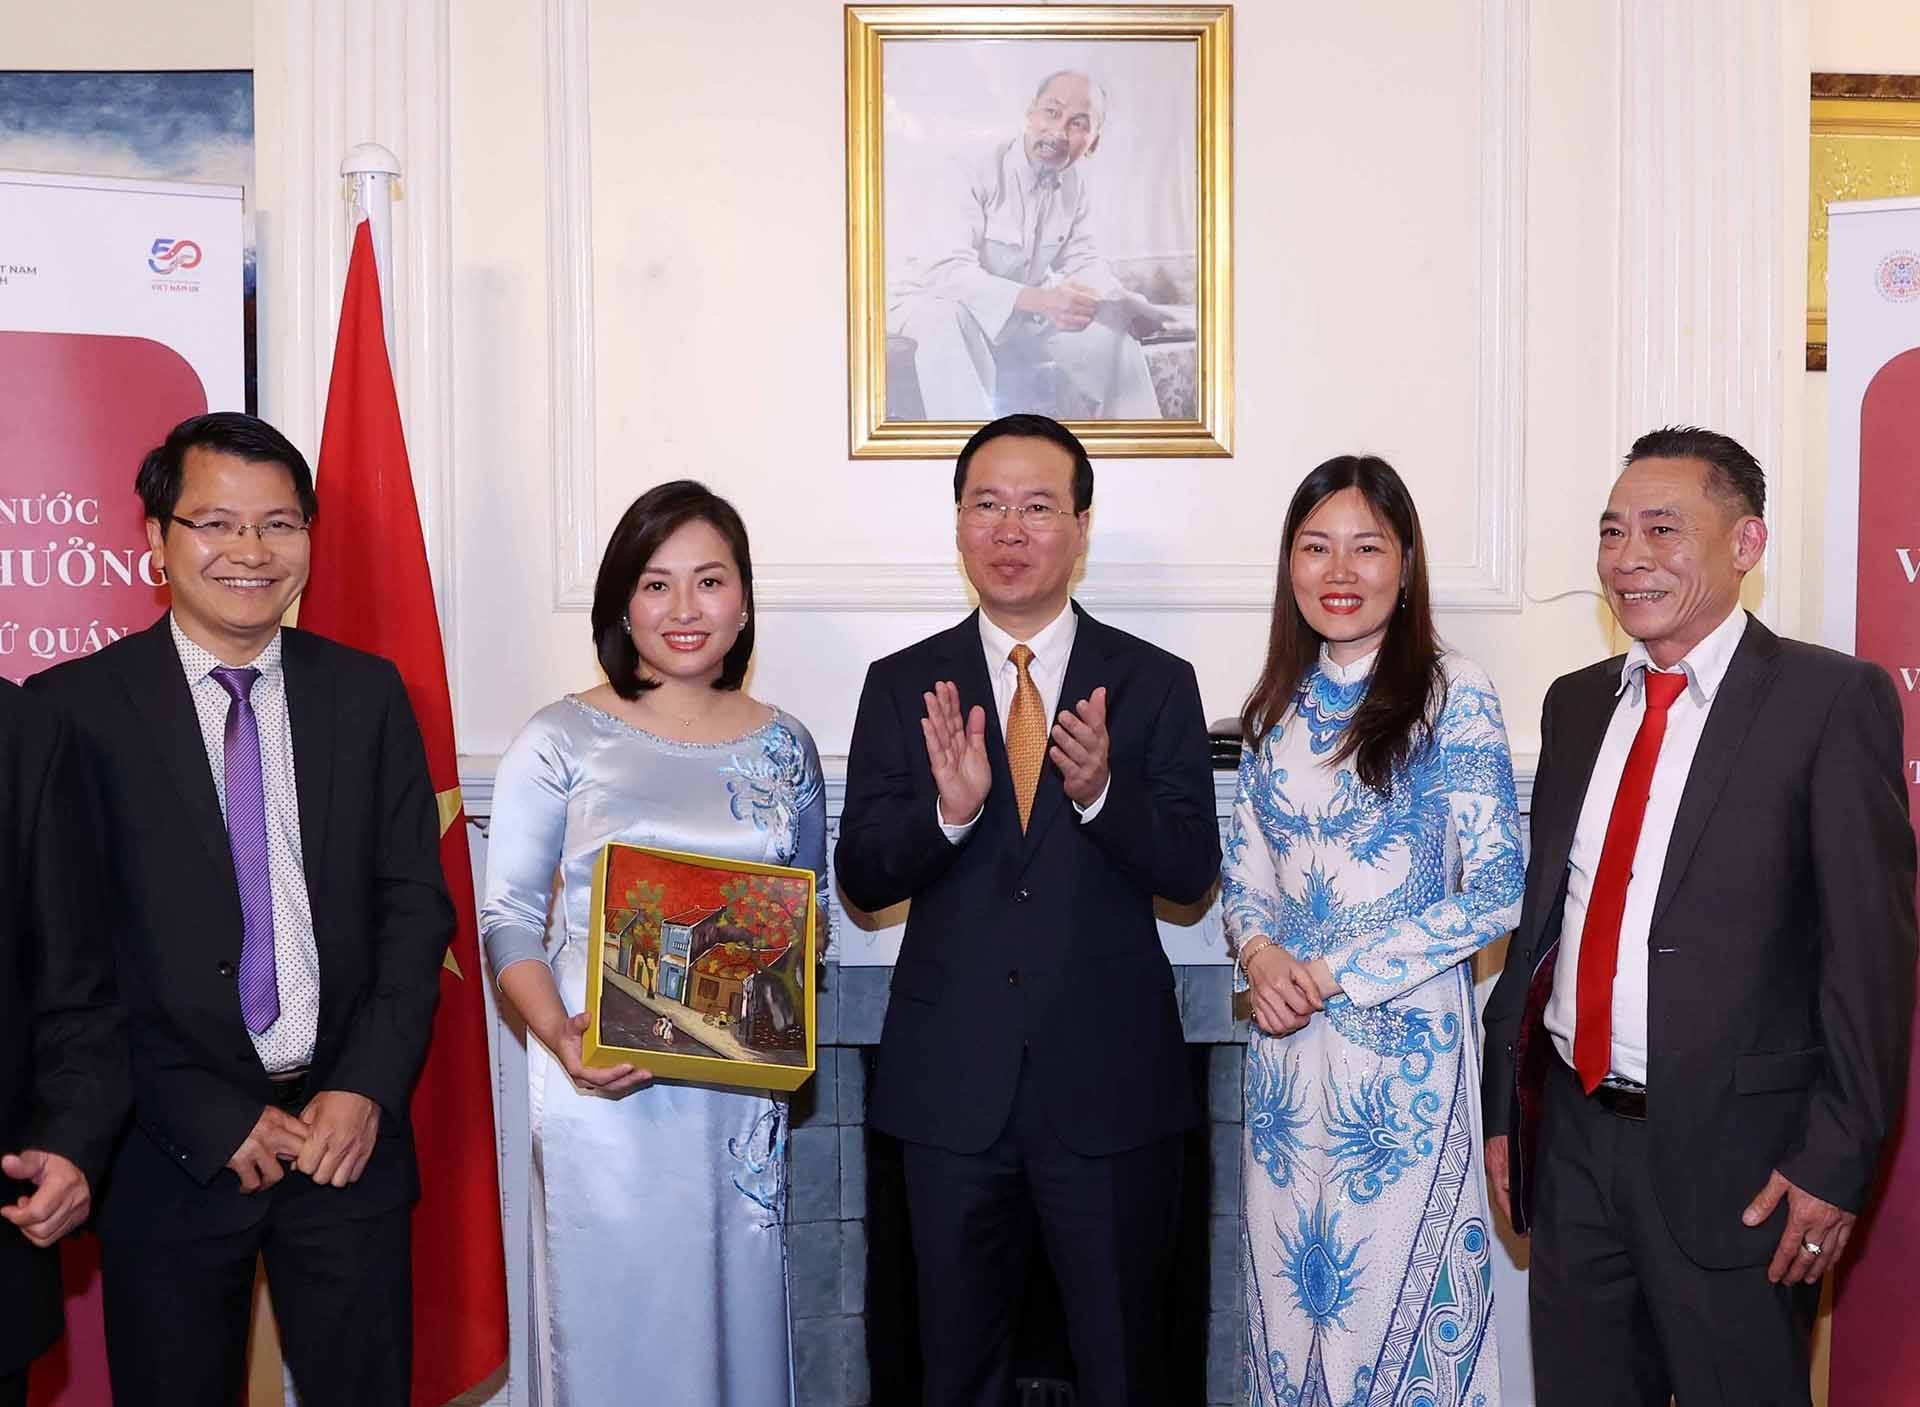 Chủ tịch nước thăm Đại sứ quán Việt Nam và gặp gỡ cộng đồng người Việt tại Anh